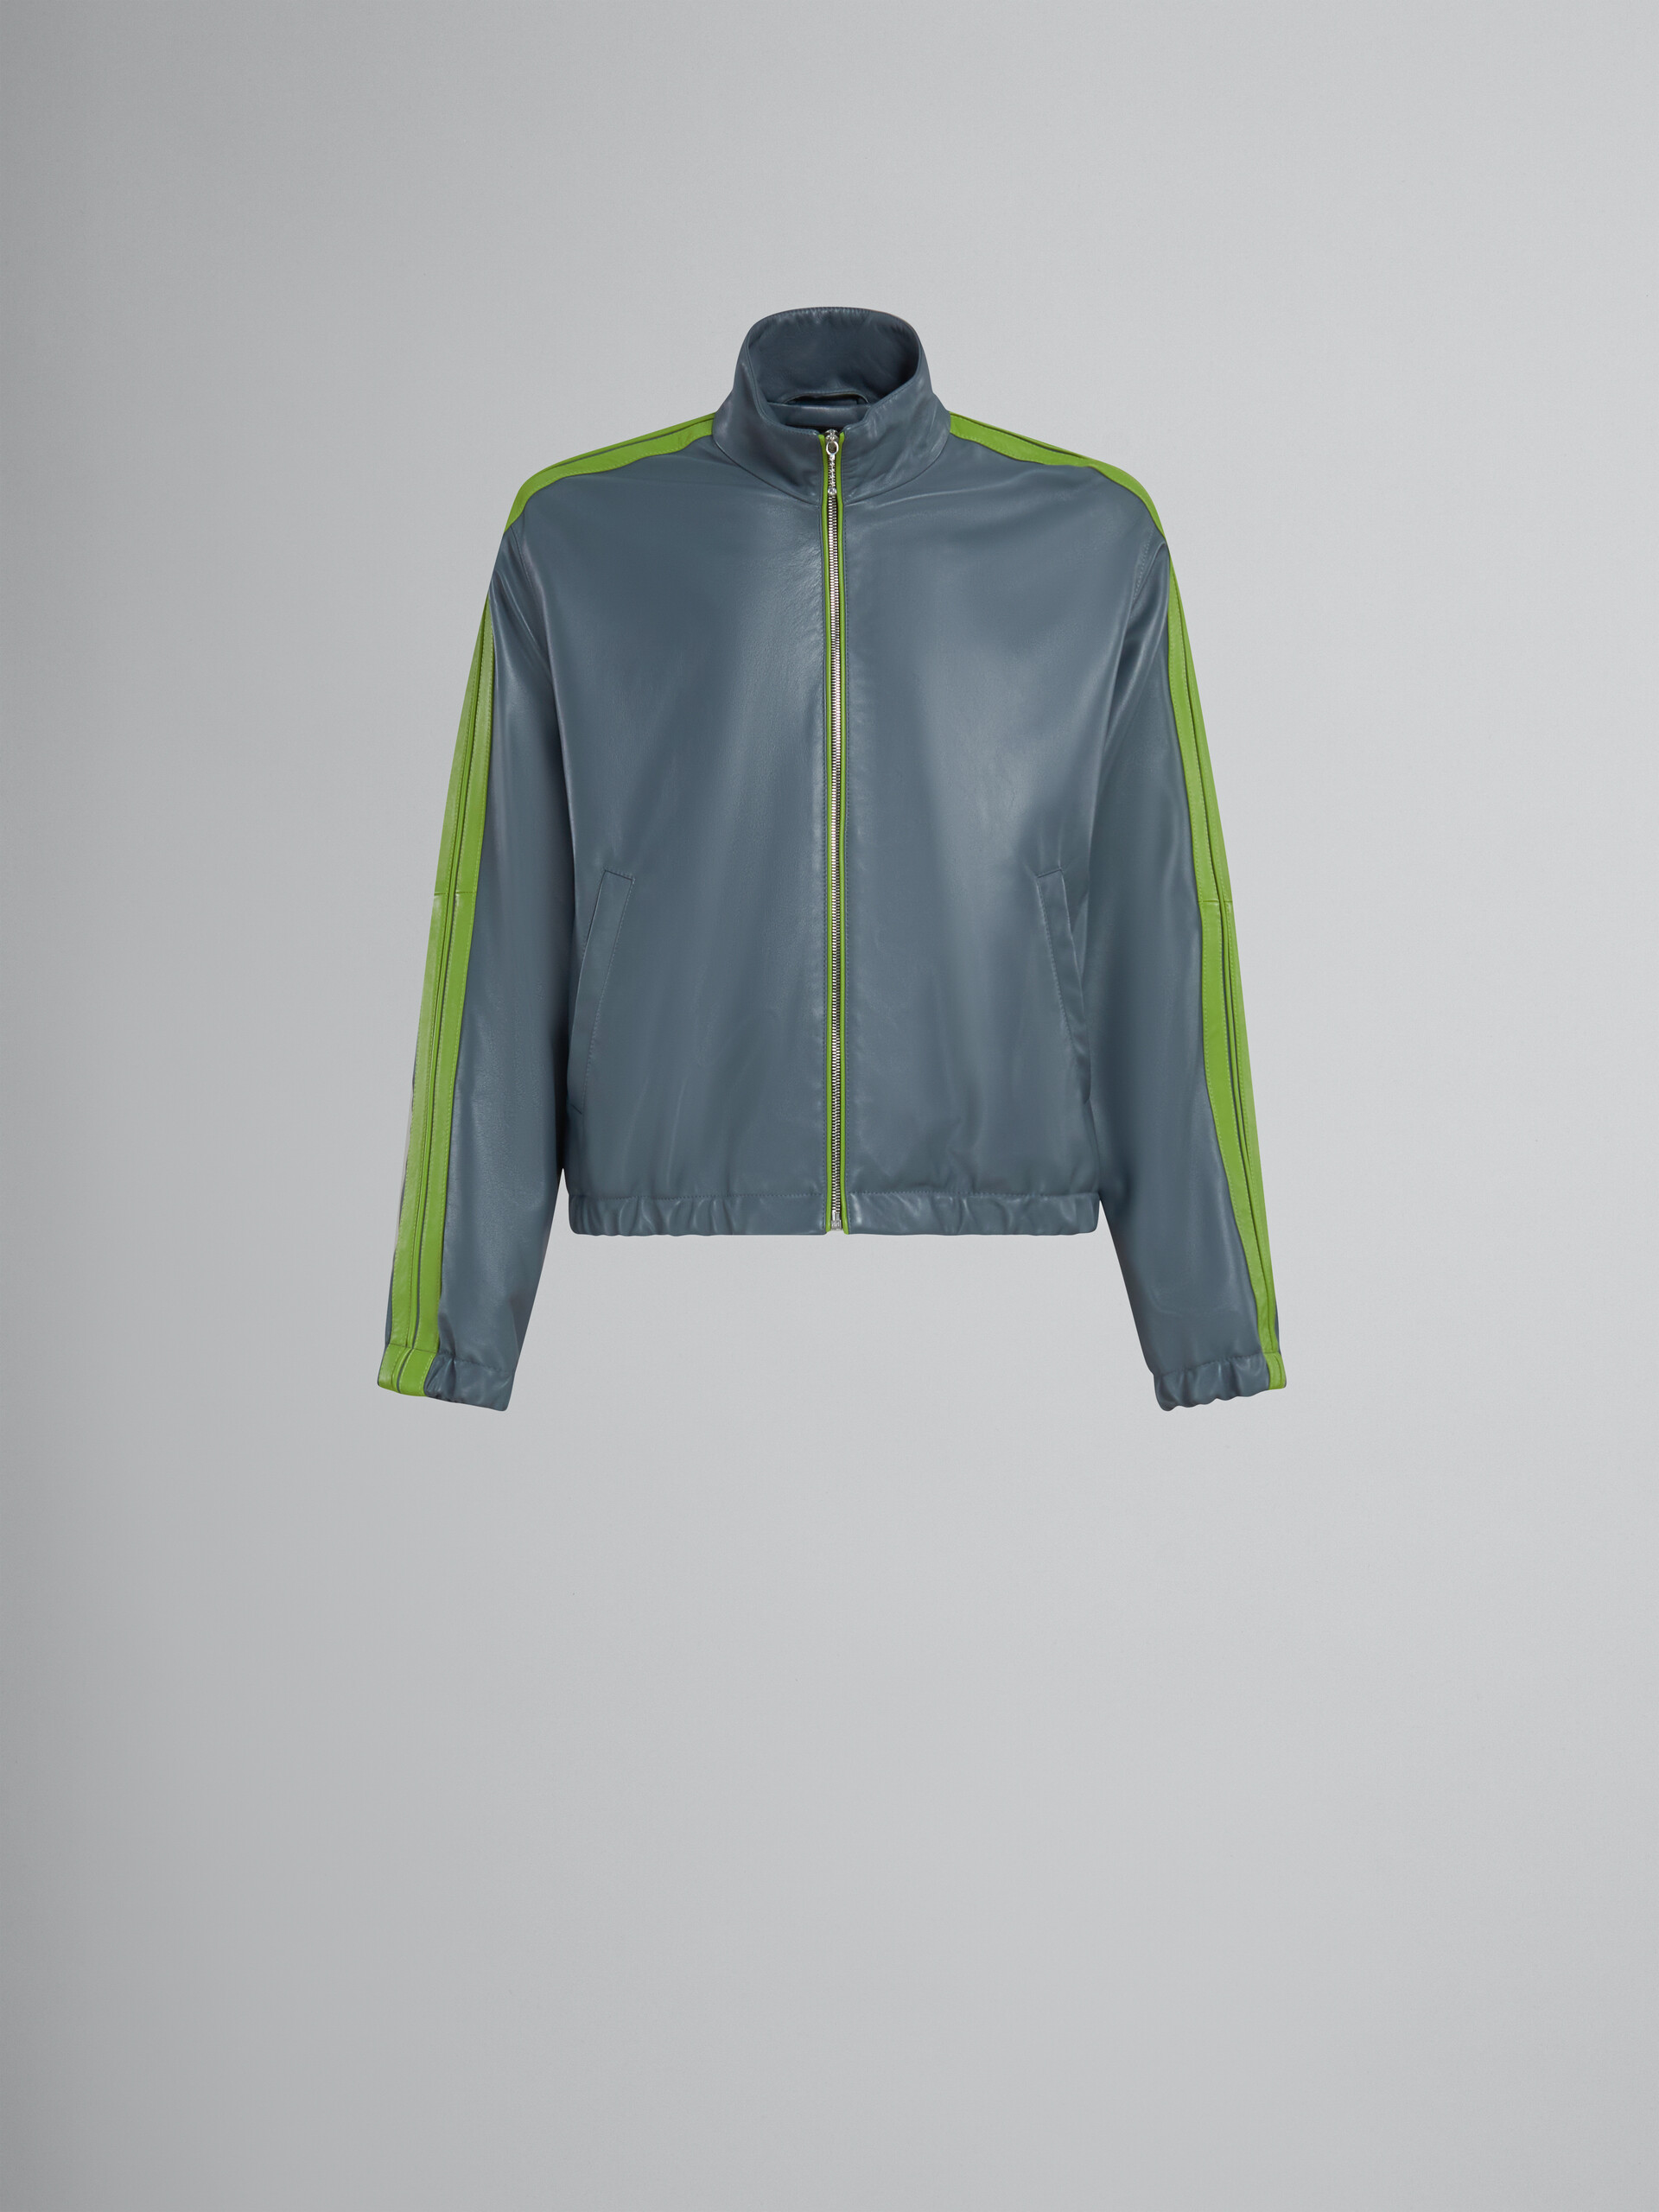 Blaugrüne Bomberjacke aus Nappaleder mit kontrastierenden Streifen - Jacken - Image 1